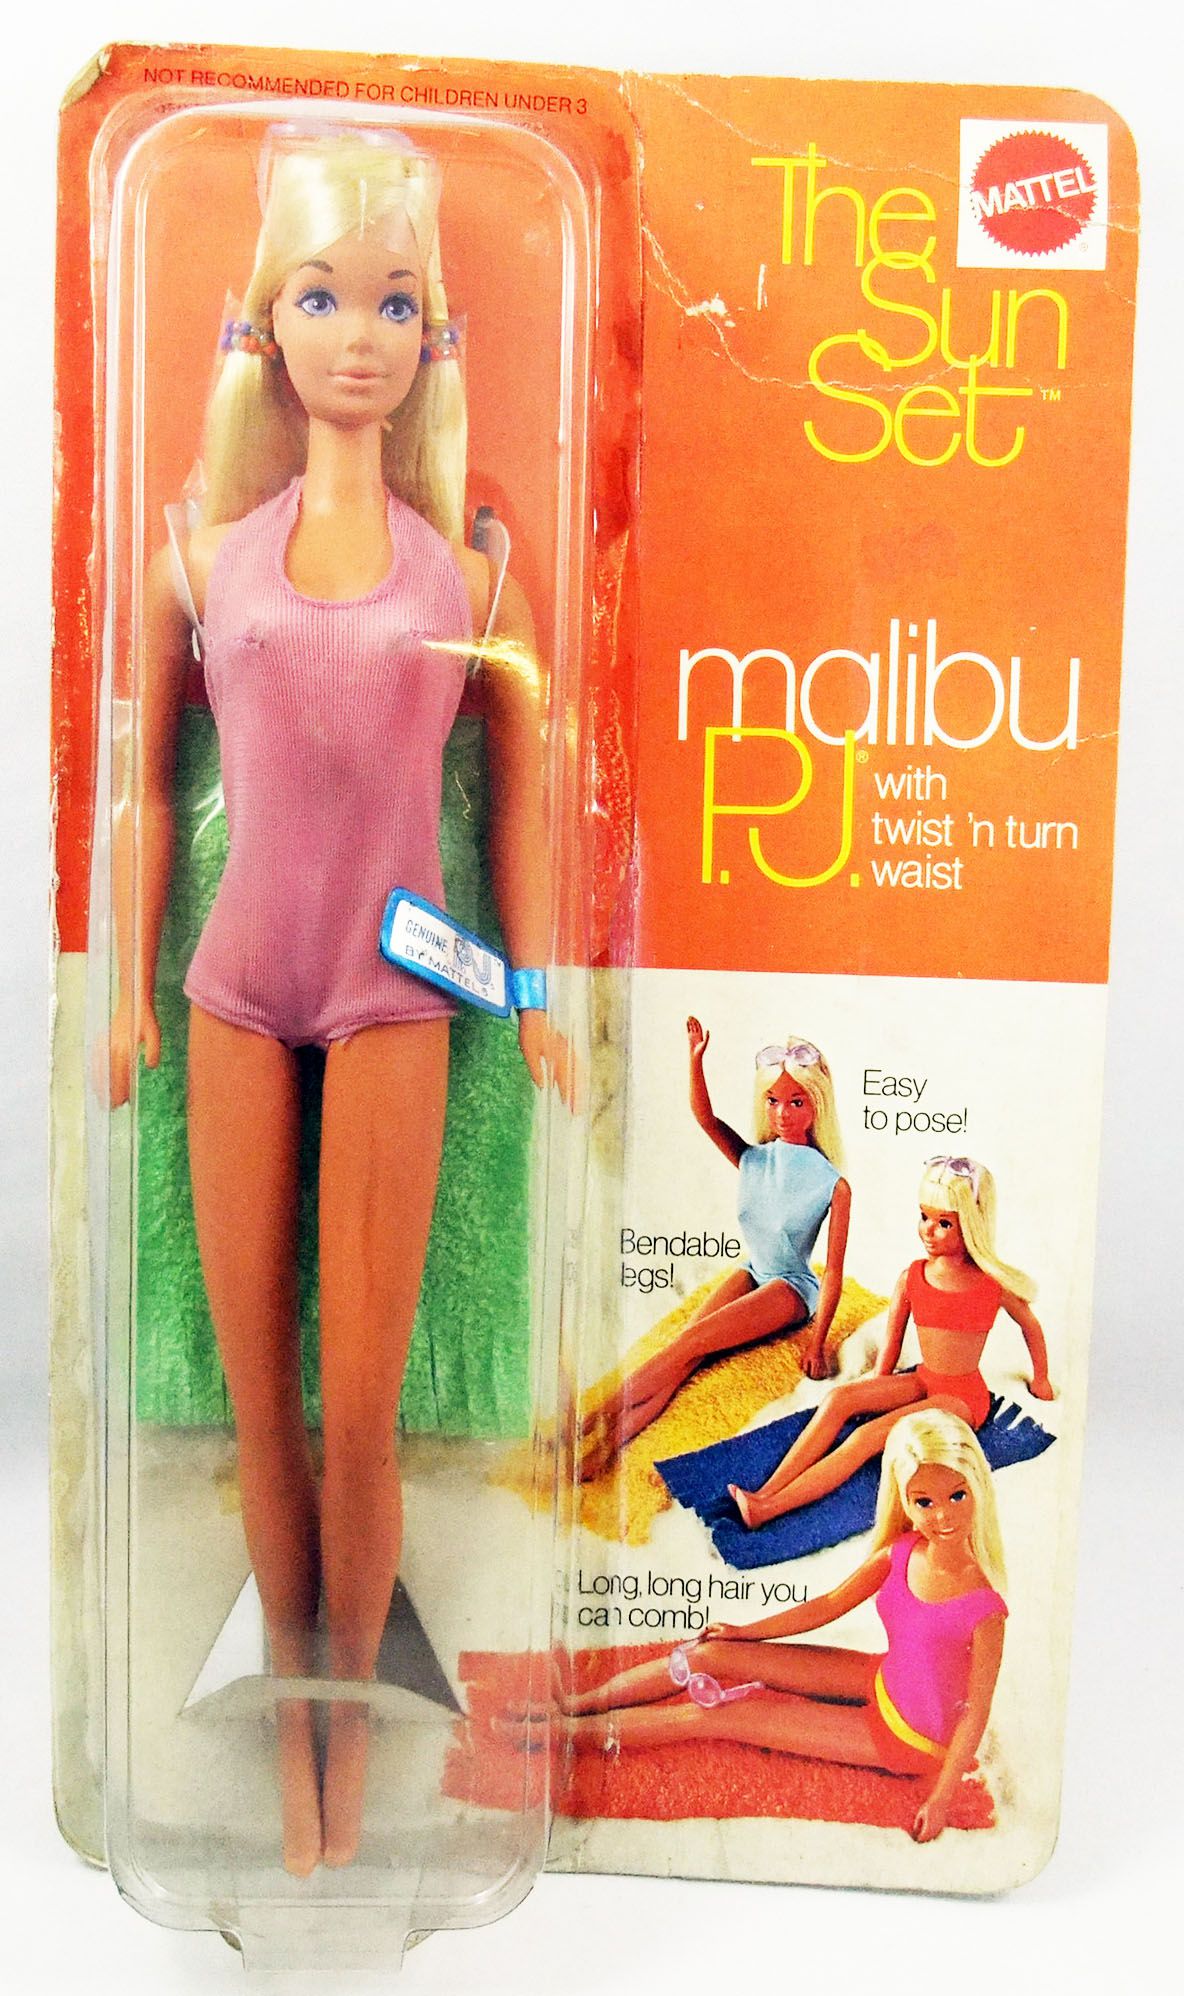 Uitbreiden Ontdooien, ontdooien, vorst ontdooien Verwaand Barbie - The Sun Set Malibu P.J. - Mattel 1970 (ref.1187)